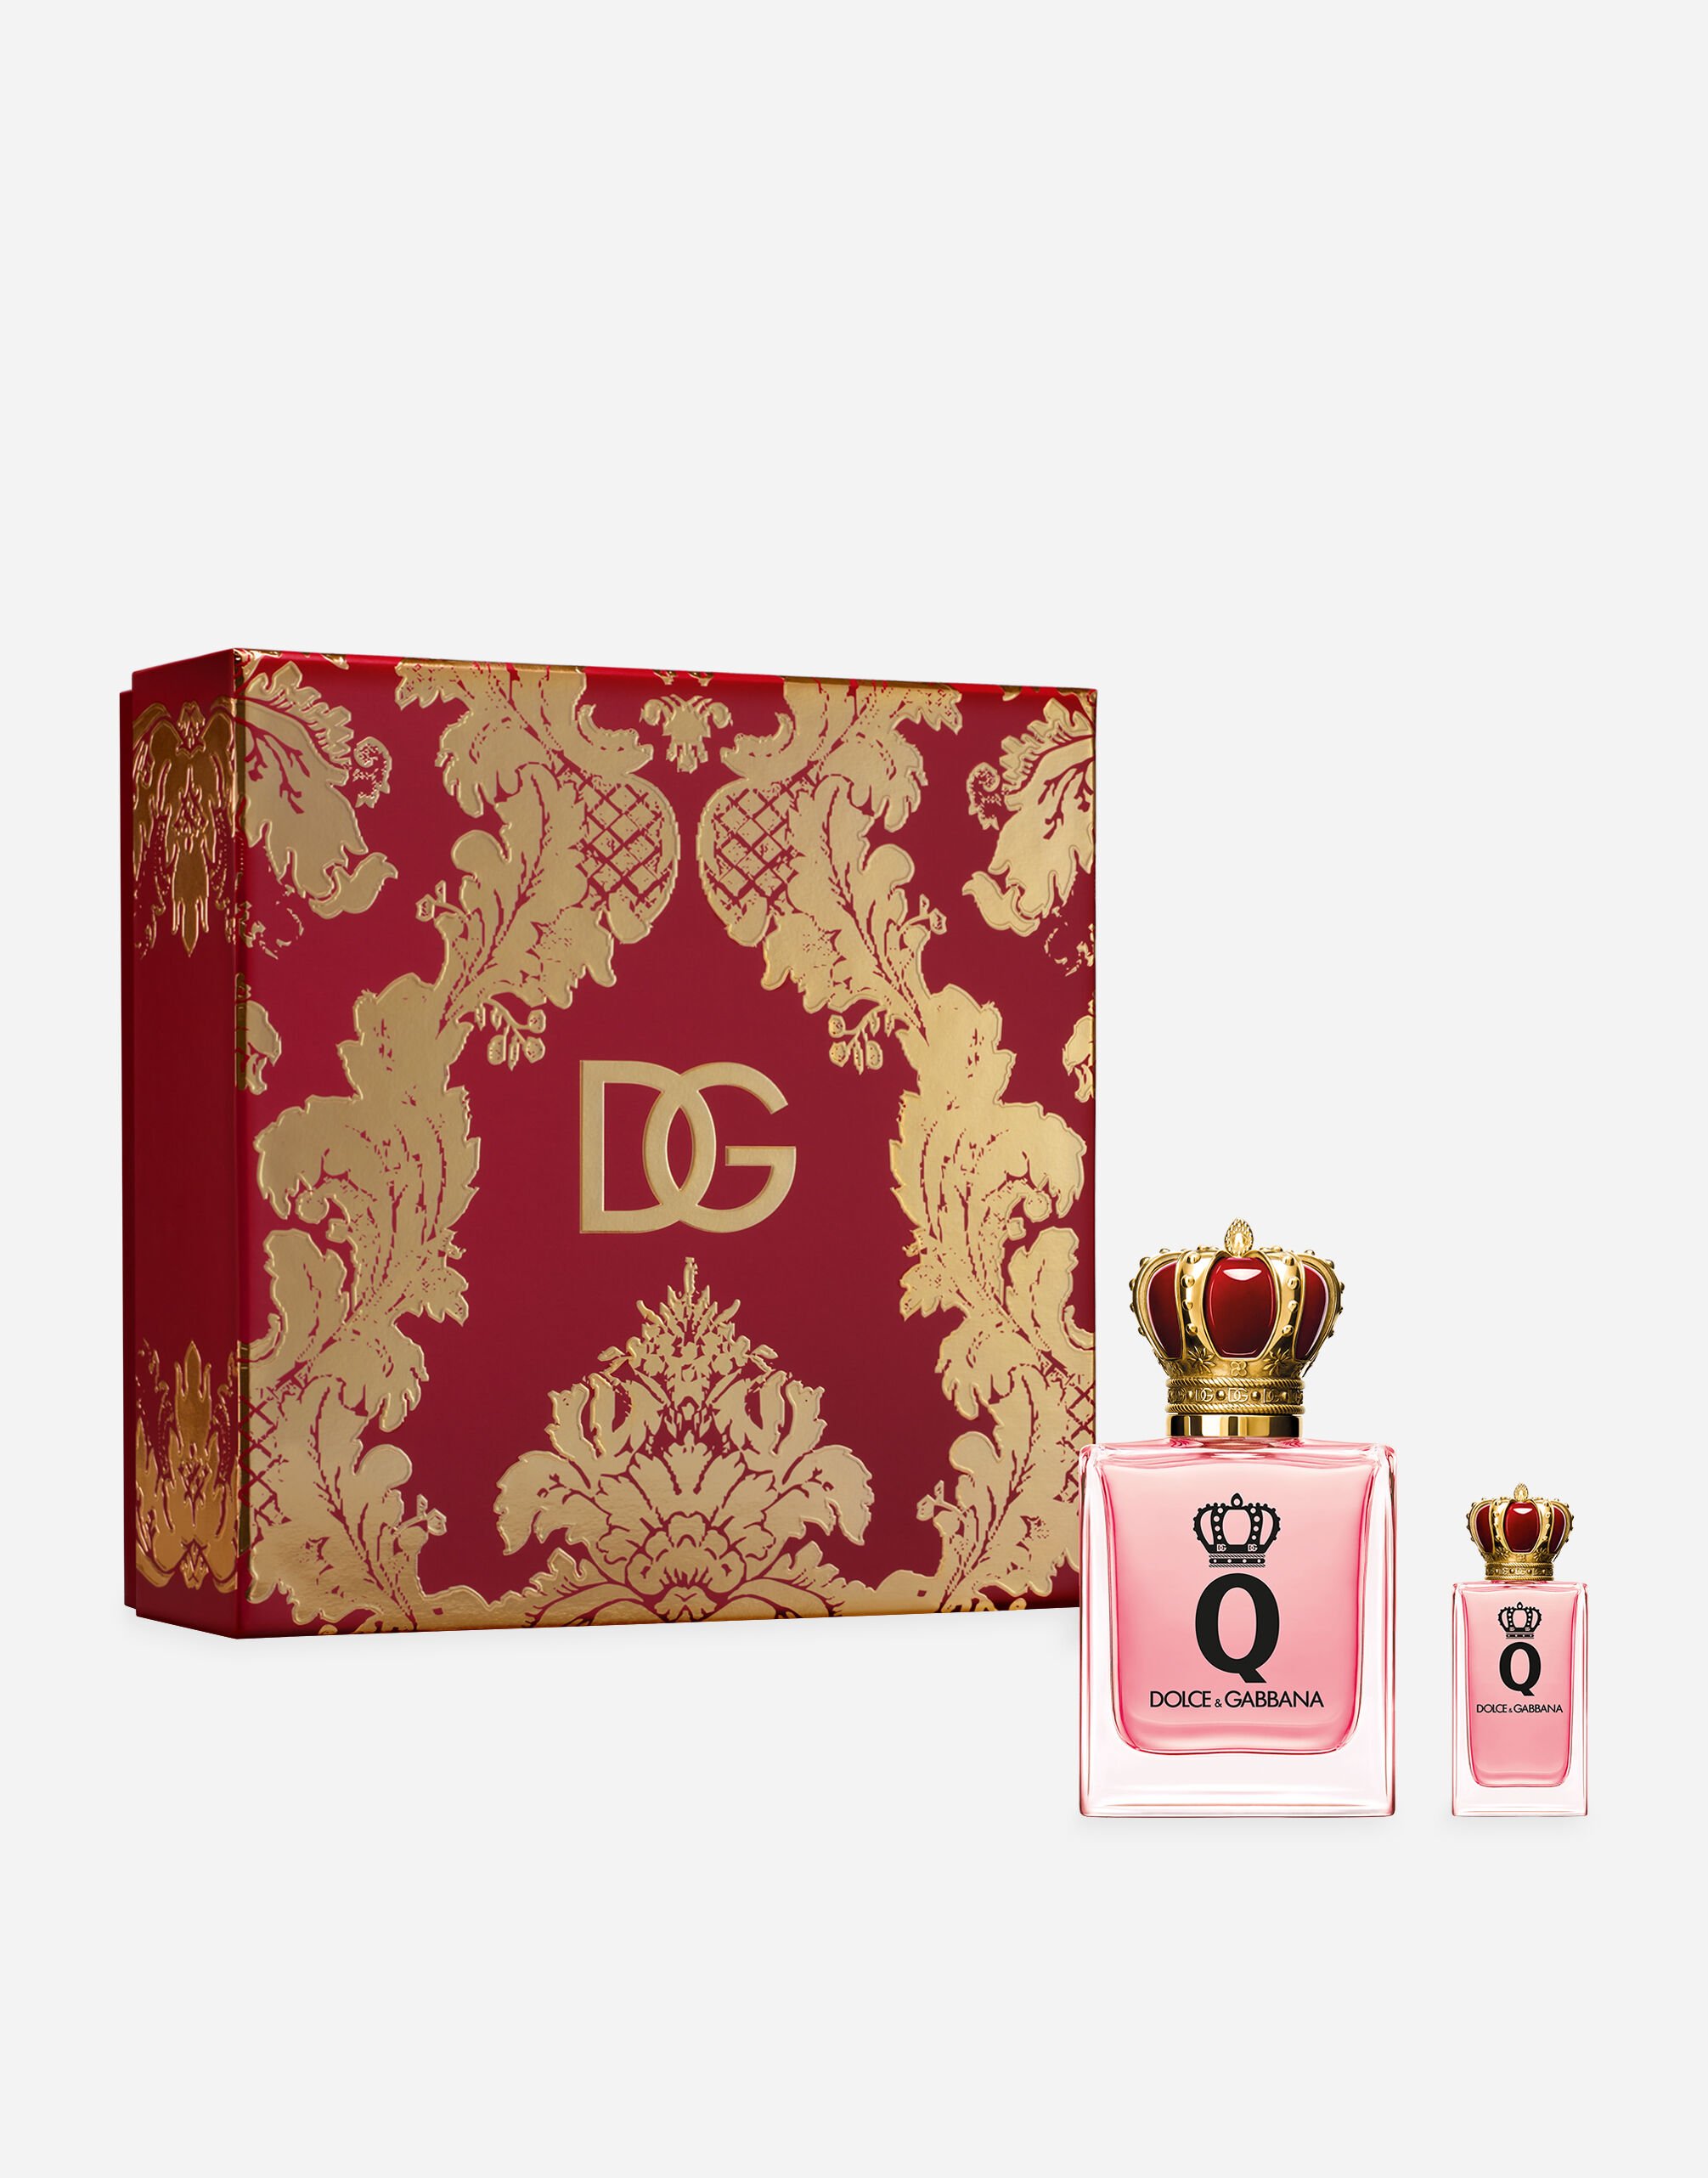 Dolce & Gabbana Exclusive Gift Set Q by Dolce&Gabbana Eau de Parfum - VT00H6VT000